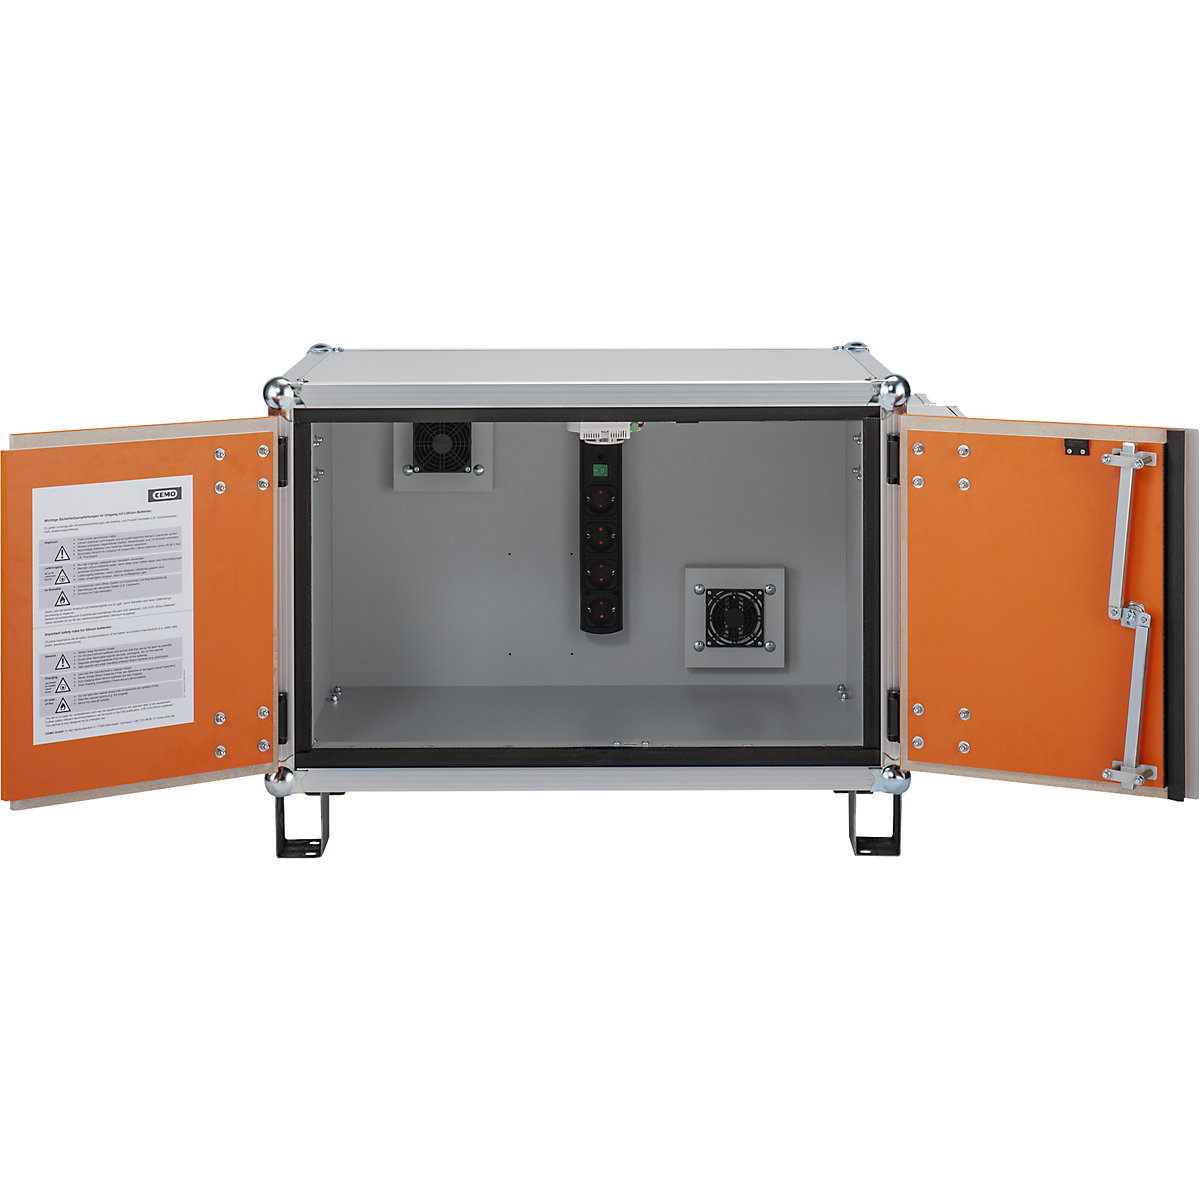 PREMIUM PLUS biztonsági akkumulátortöltő szekrény – CEMO